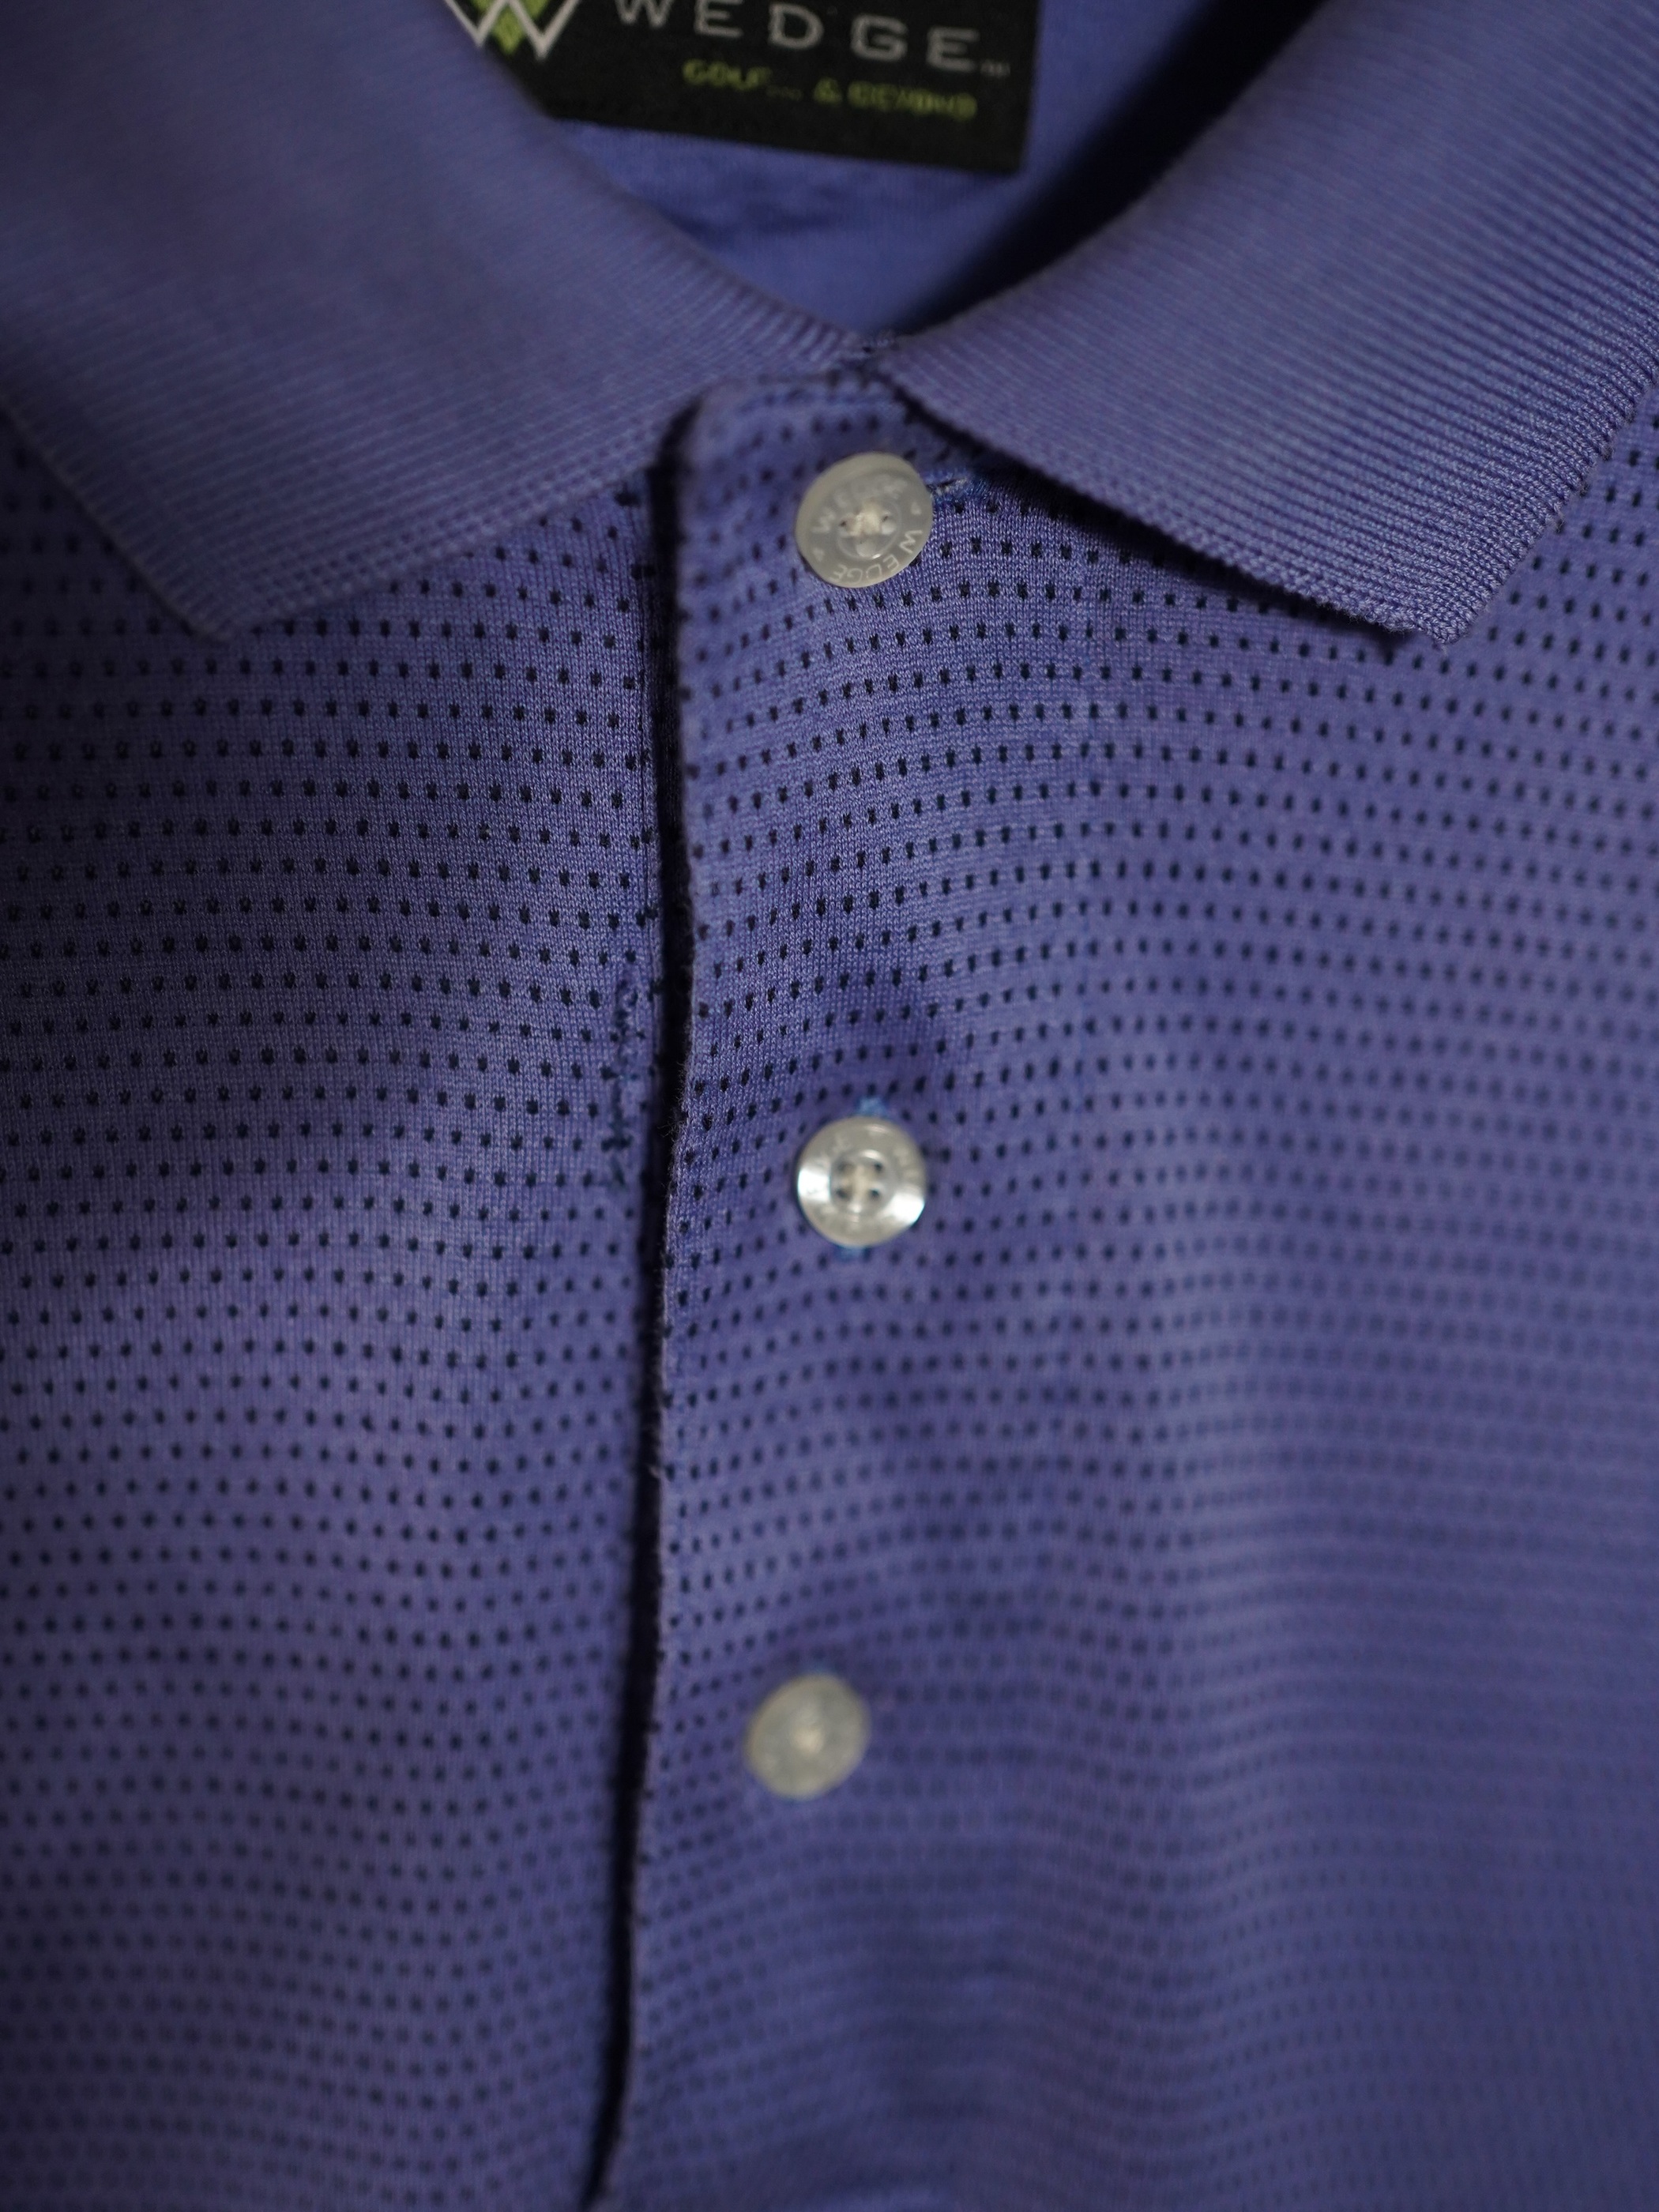 WEDGE GOLF...&BEYOND Dot design Polo shirts